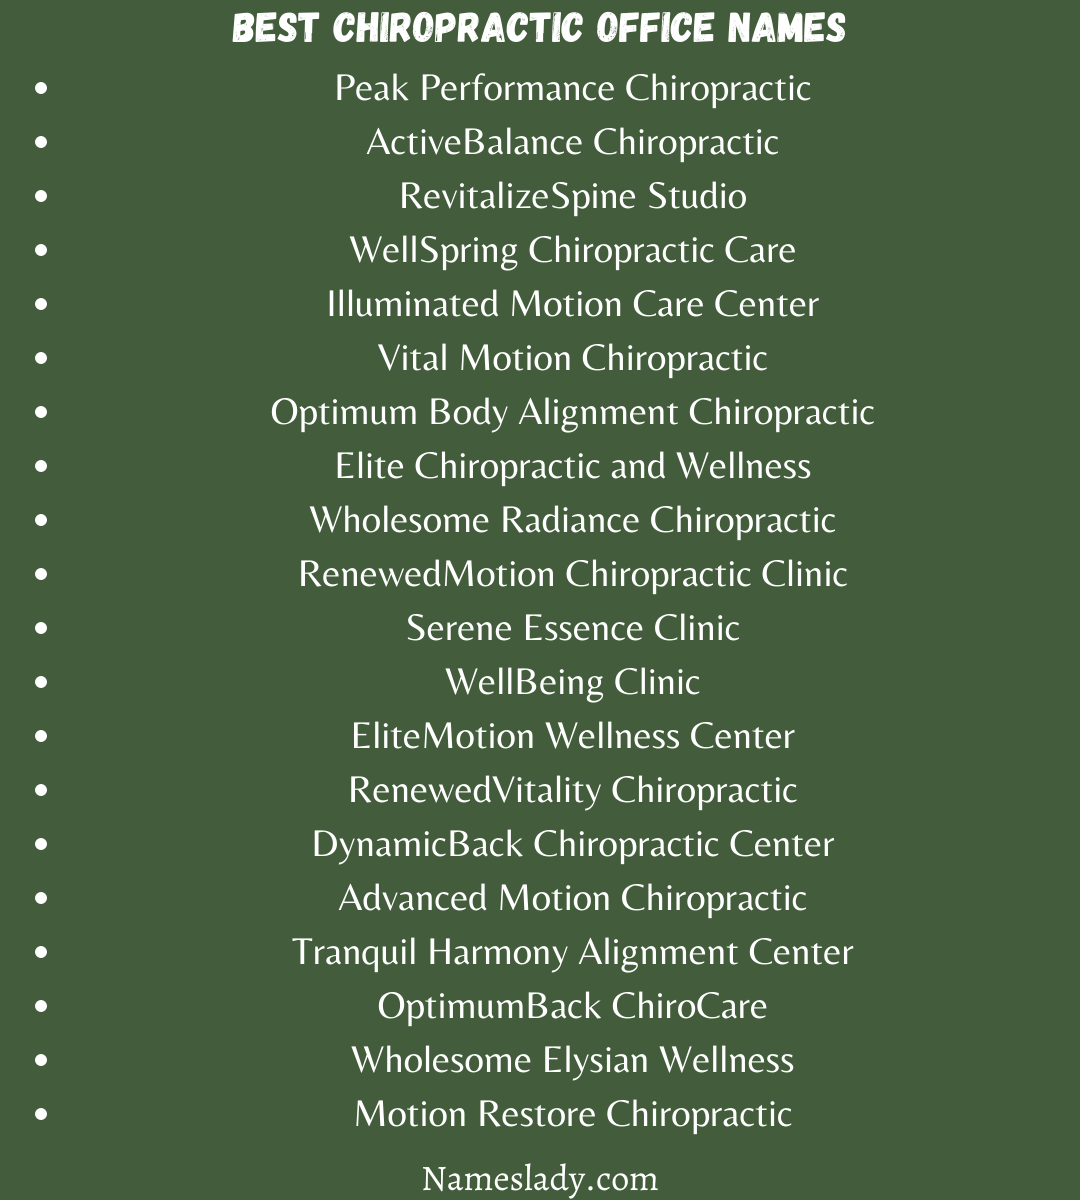 Best Chiropractic Office Names